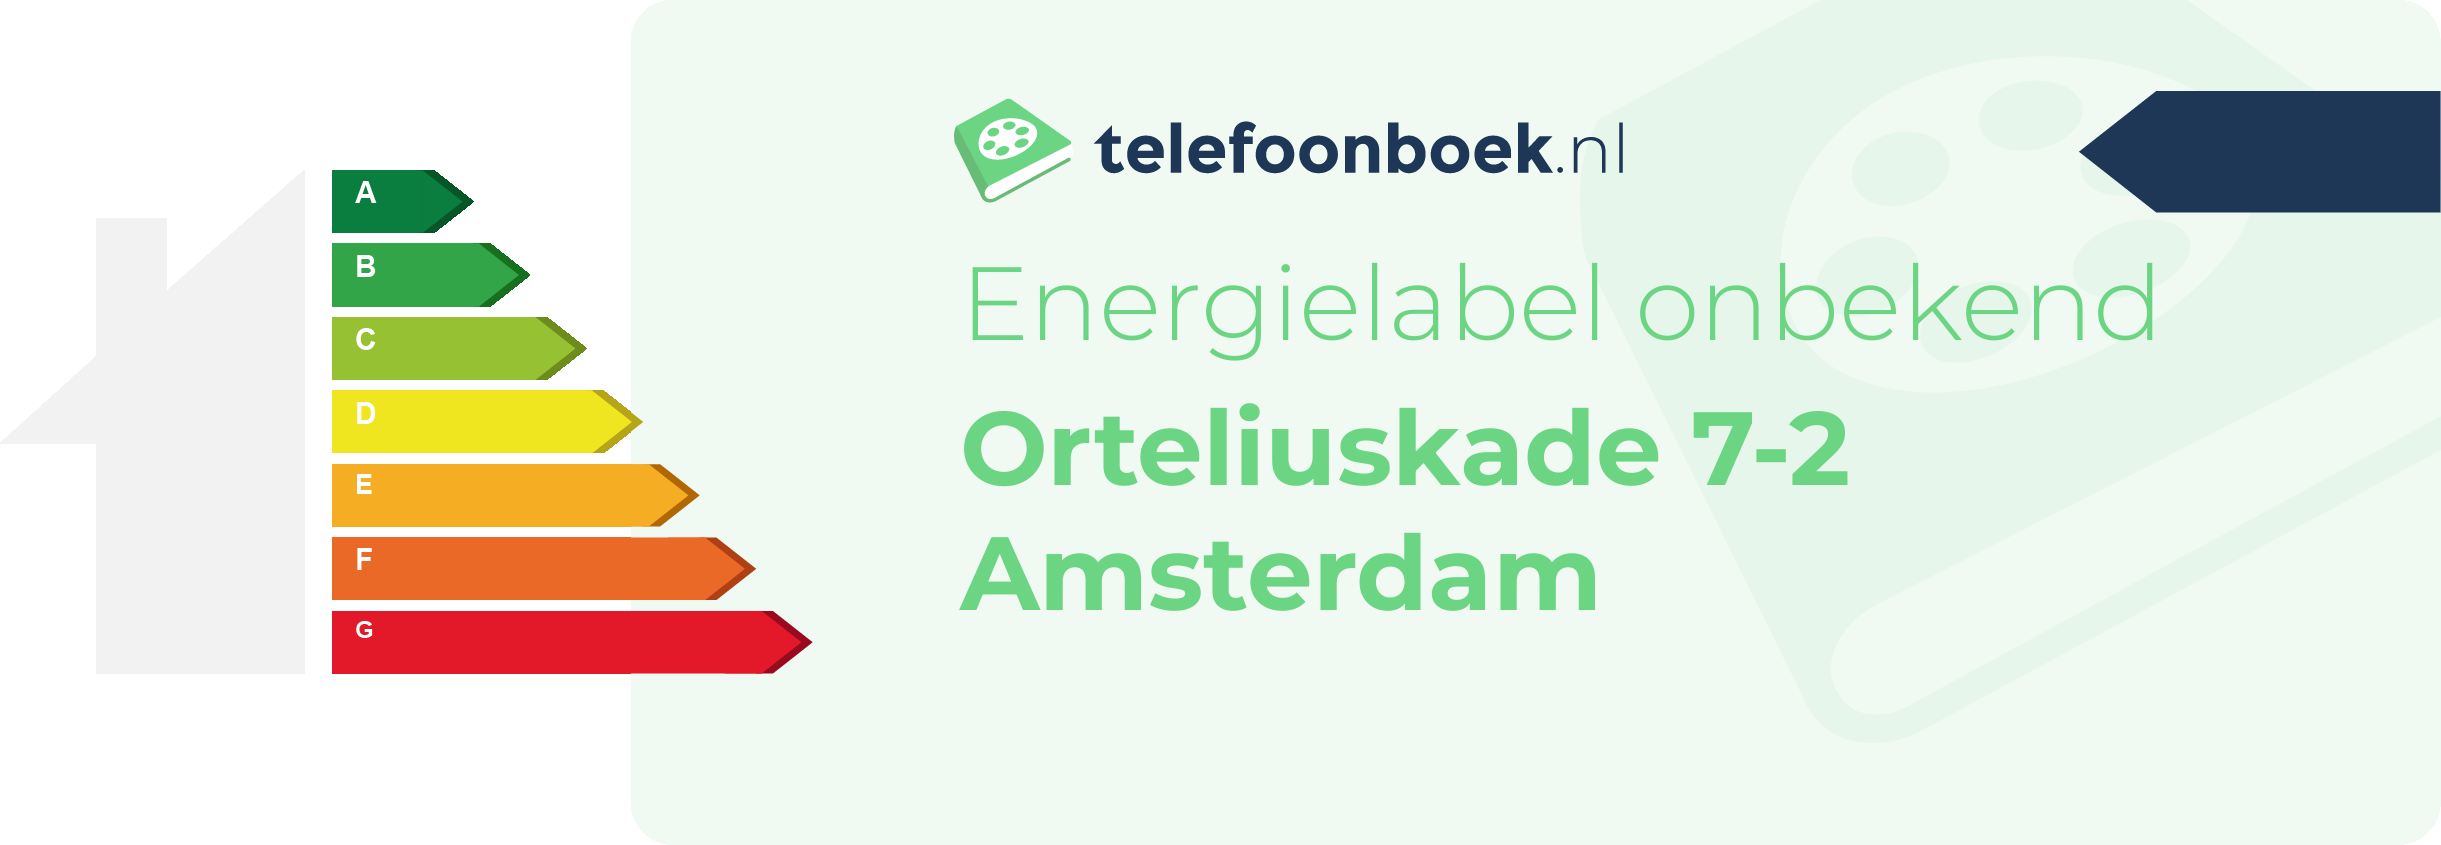 Energielabel Orteliuskade 7-2 Amsterdam